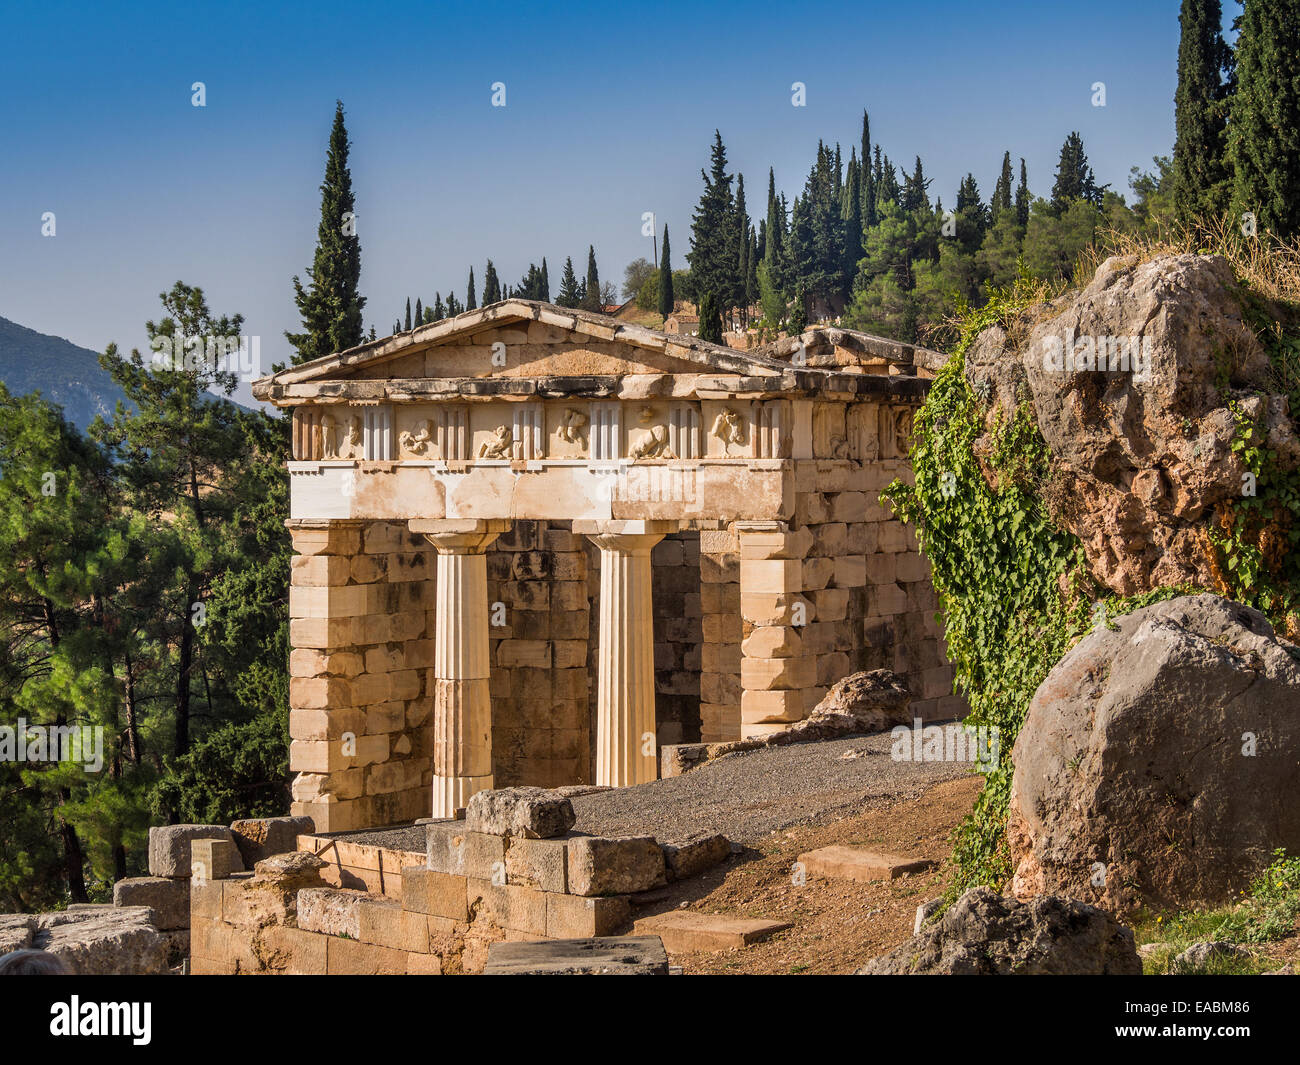 La reconstruction de la trésorerie de Delphes, Grèce, construite pour célébrer leur victoire à la bataille de Marathon. Banque D'Images